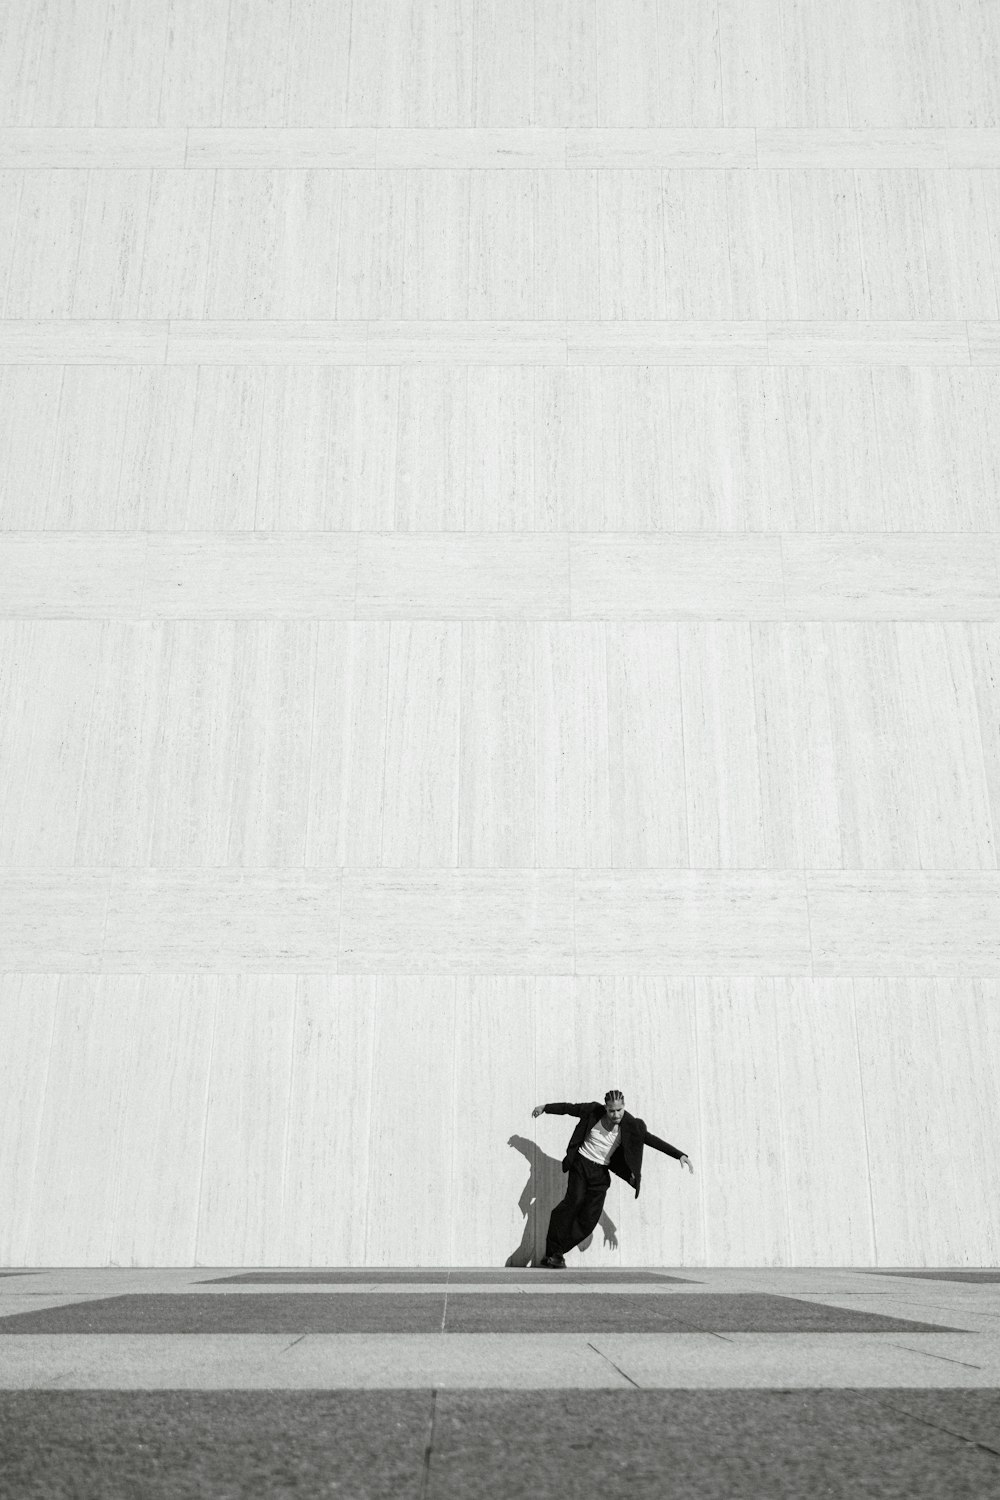 Un hombre montando una patineta sobre un piso de cemento